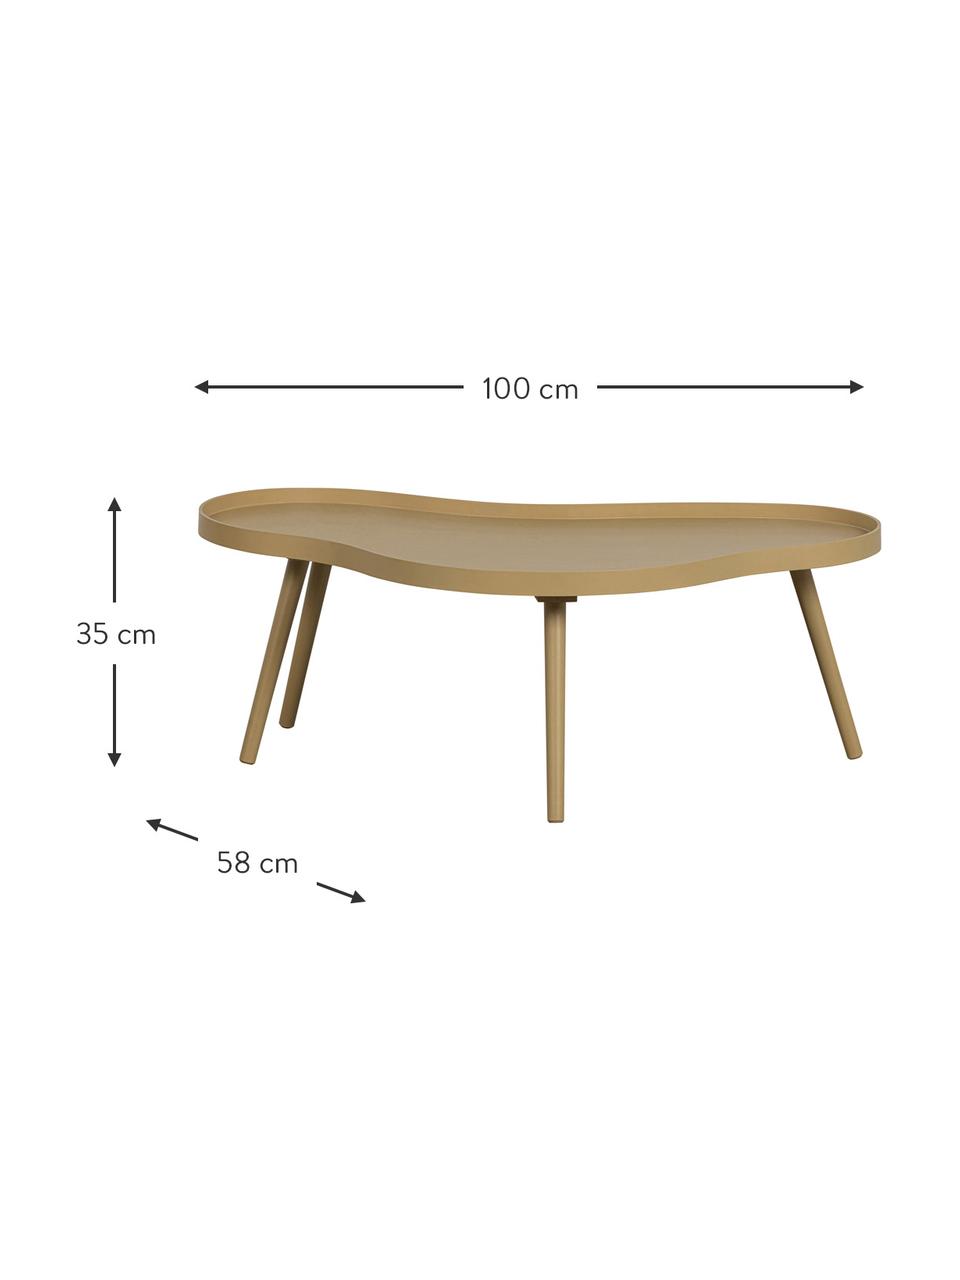 Holz-Couchtisch Mae in organischer Form, Tischplatte: Mitteldichte Holzfaserpla, Beine: Kiefernholz, beschichtet, Holz, B 100 x H 35 cm